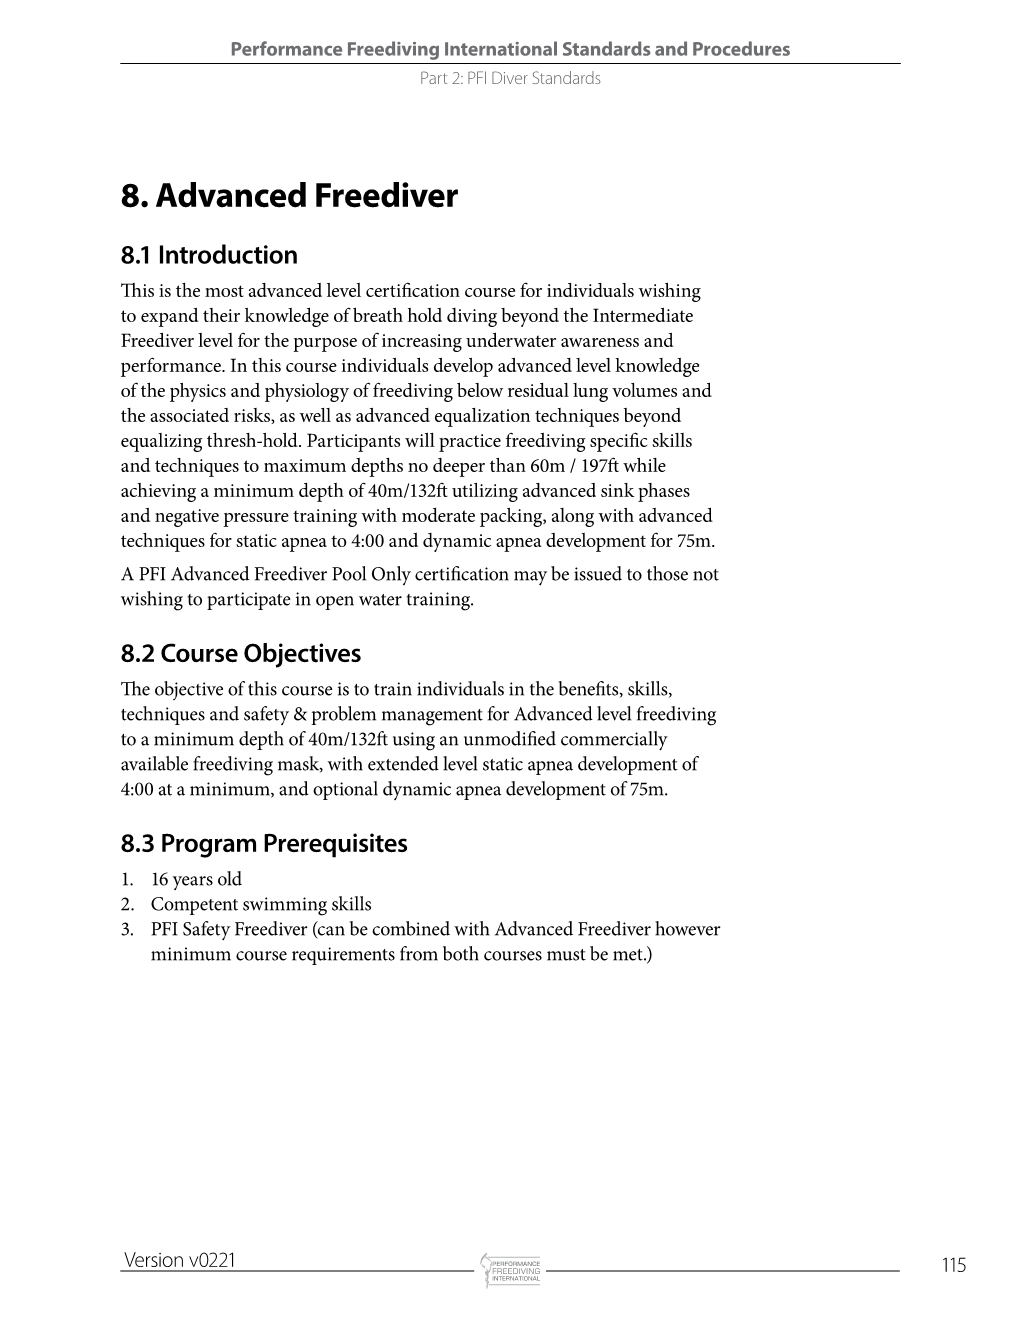 8. Advanced Freediver